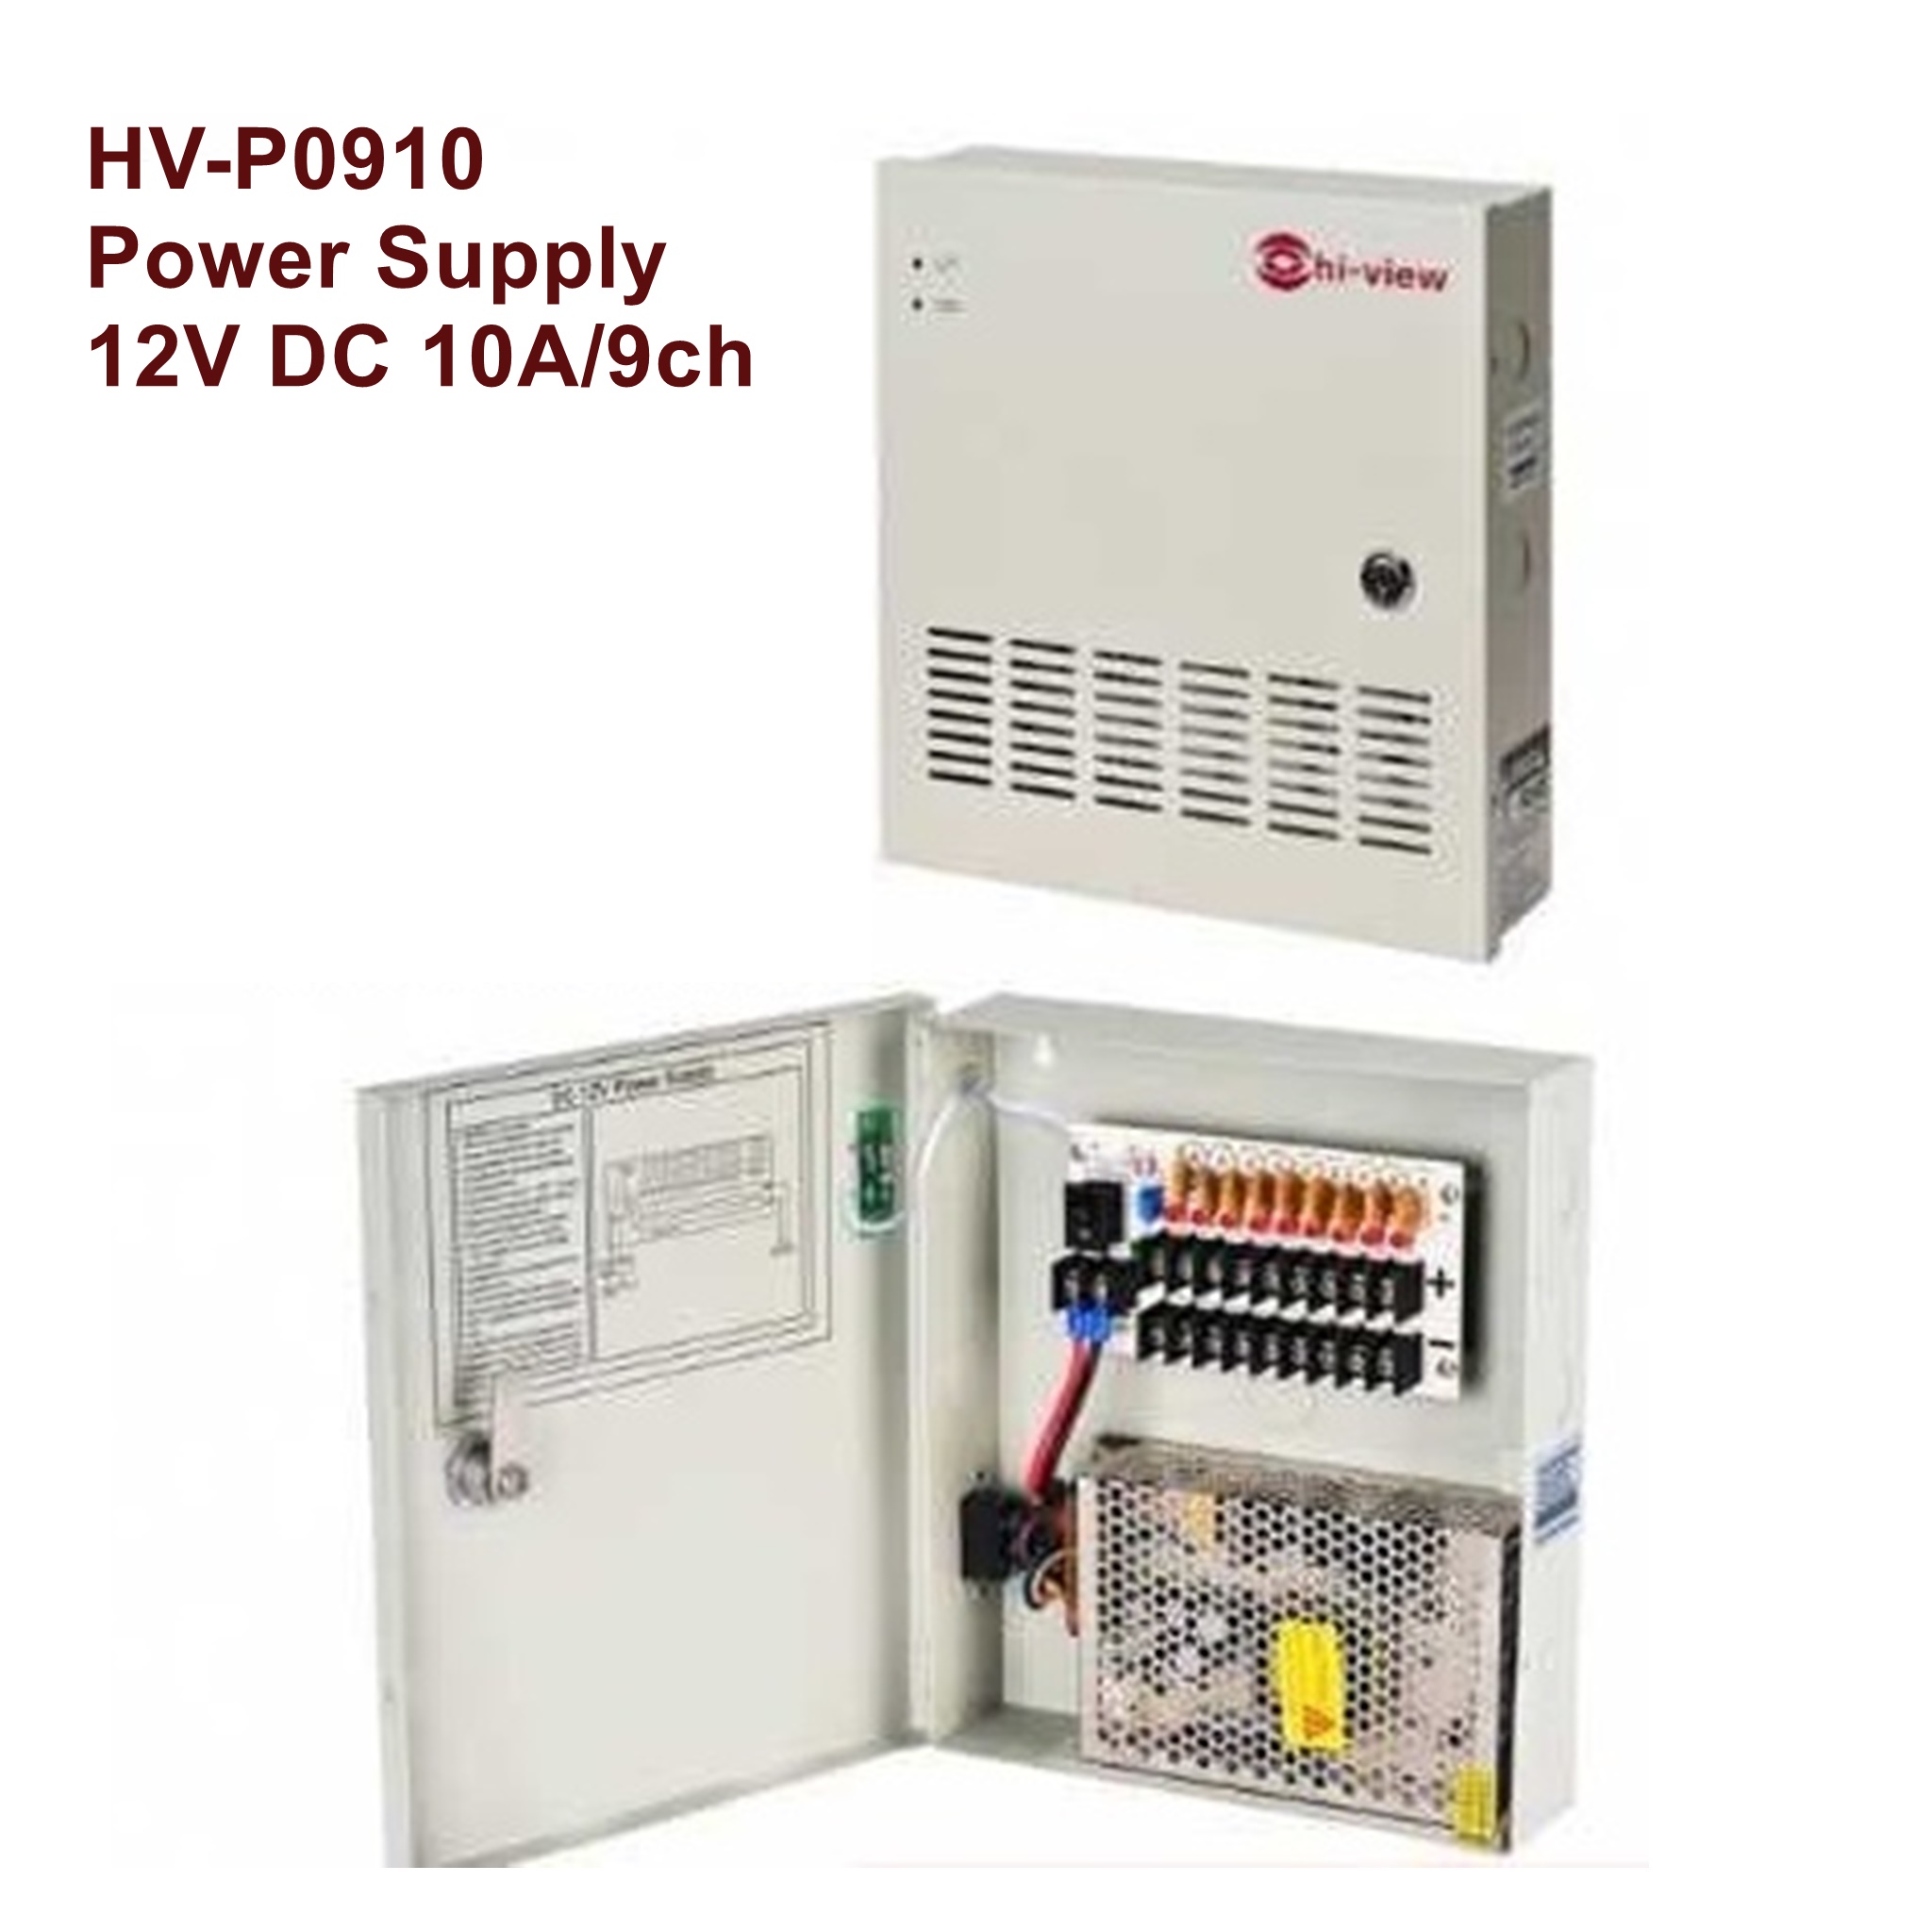 HV-P0910 Power Supply 12V DC 10A/9ch